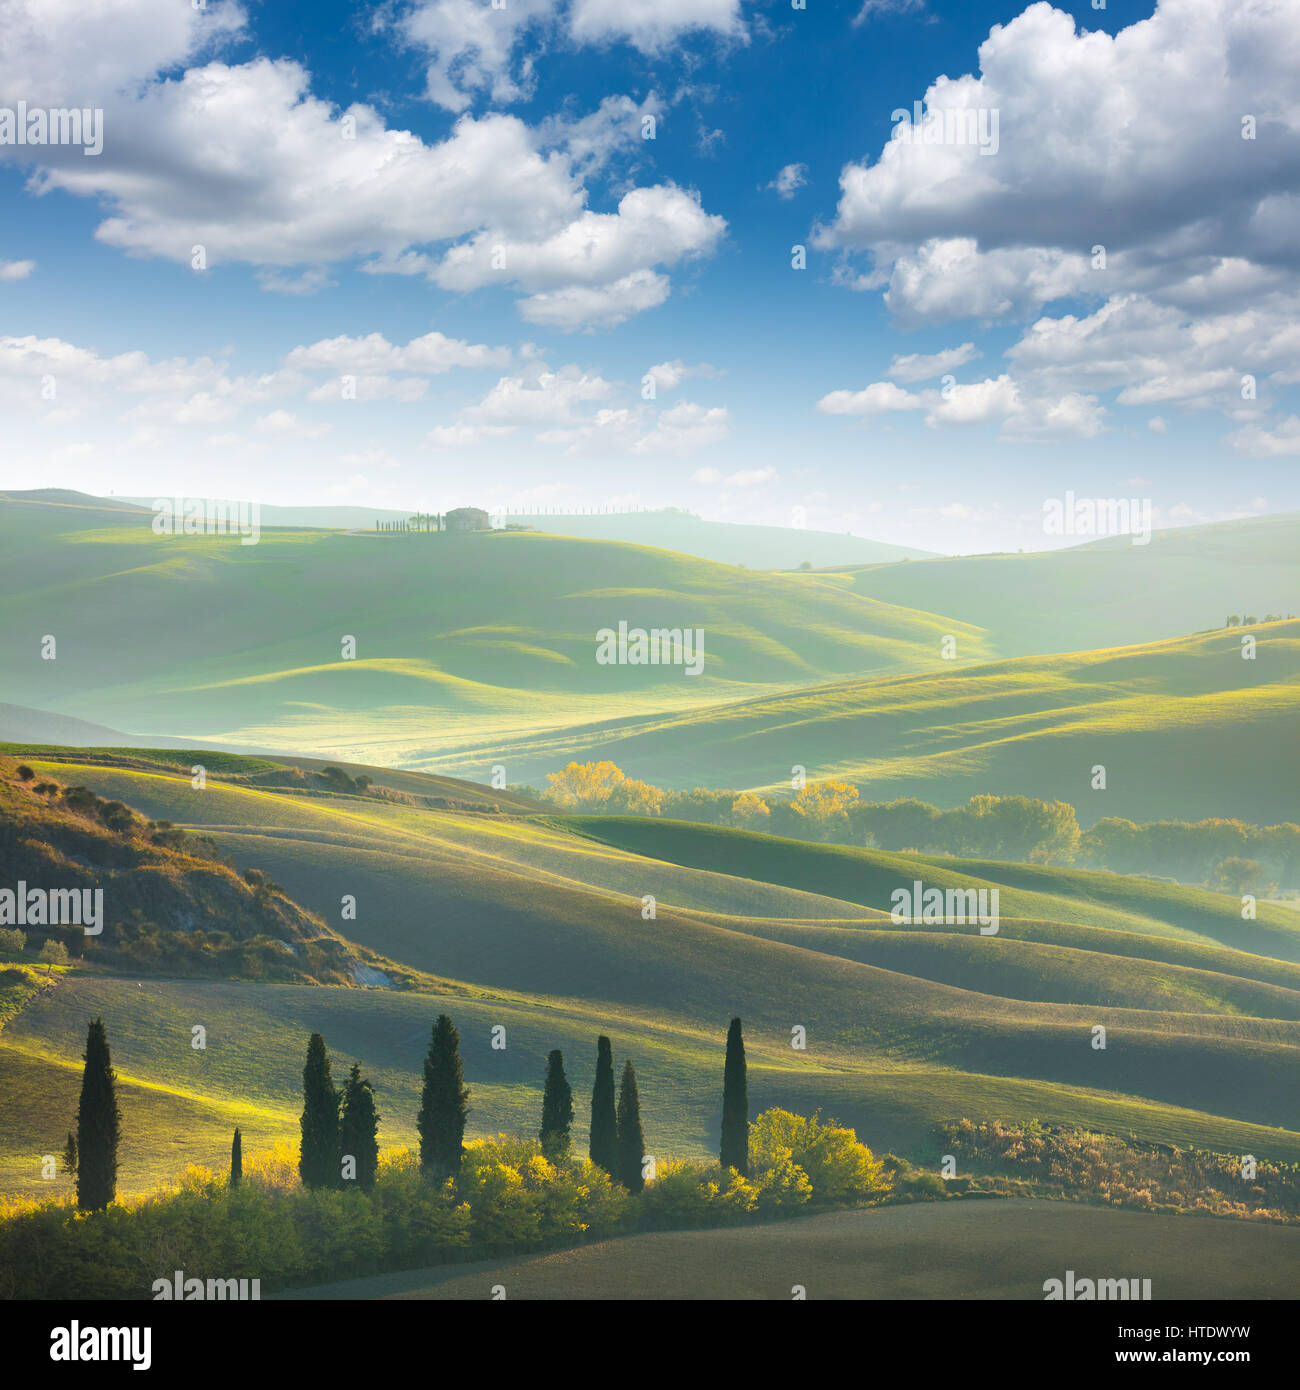 Frais vert paysage toscane au printemps - vague hills, cyprès, arbres herbe verte et ciel bleu. La Toscane, Italie, Europe Banque D'Images